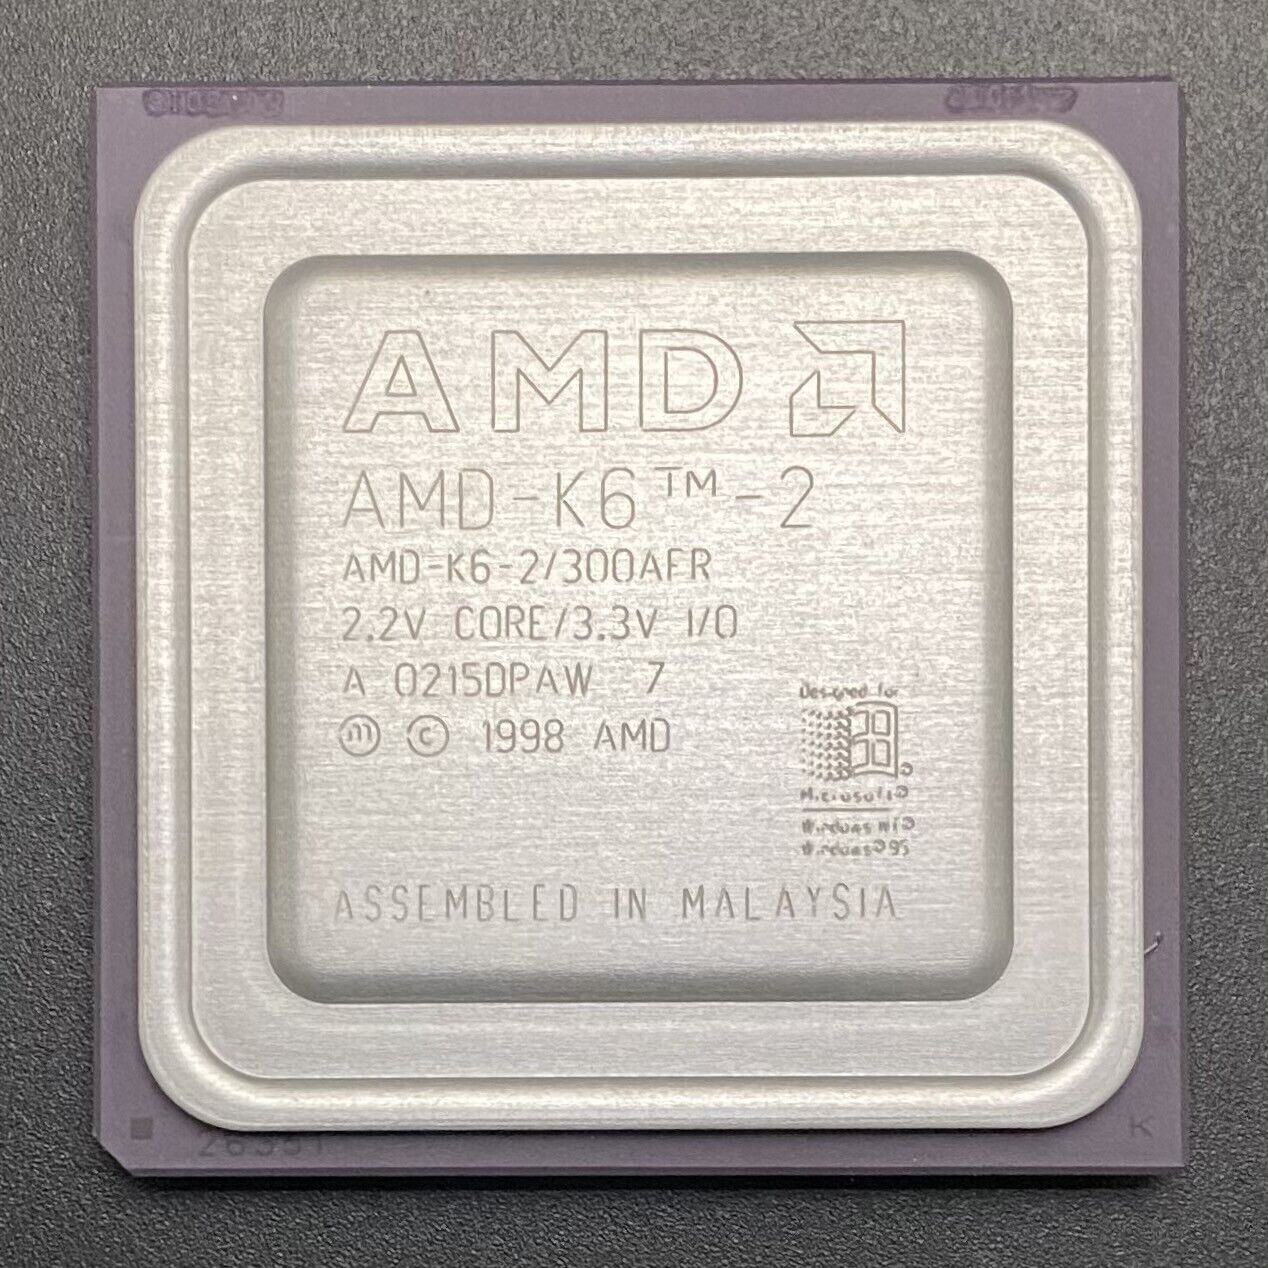 AMD K6-2/300AFR CPU 300MHz 2.2V 3x 100MHz Super Socket7 x86 Processor NOS